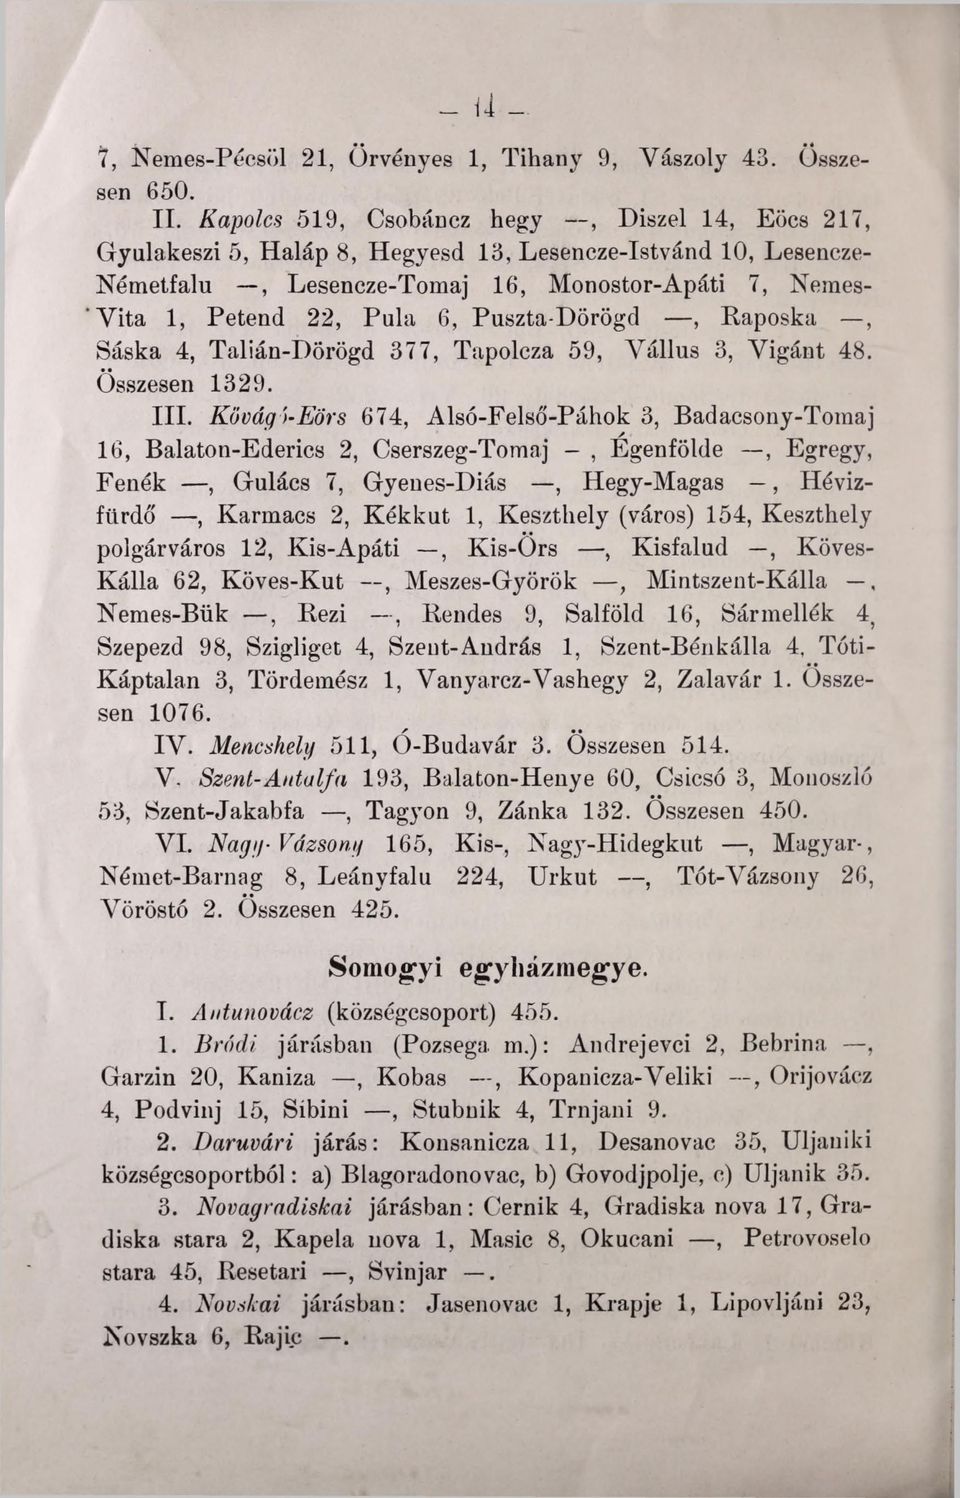 Puszta-Dörögd, Raposka, Sáska 4, Talián-Dörögd 377, Tapolcza 59, Vállus 3, Vigánt 48. Összesen 1329. III.